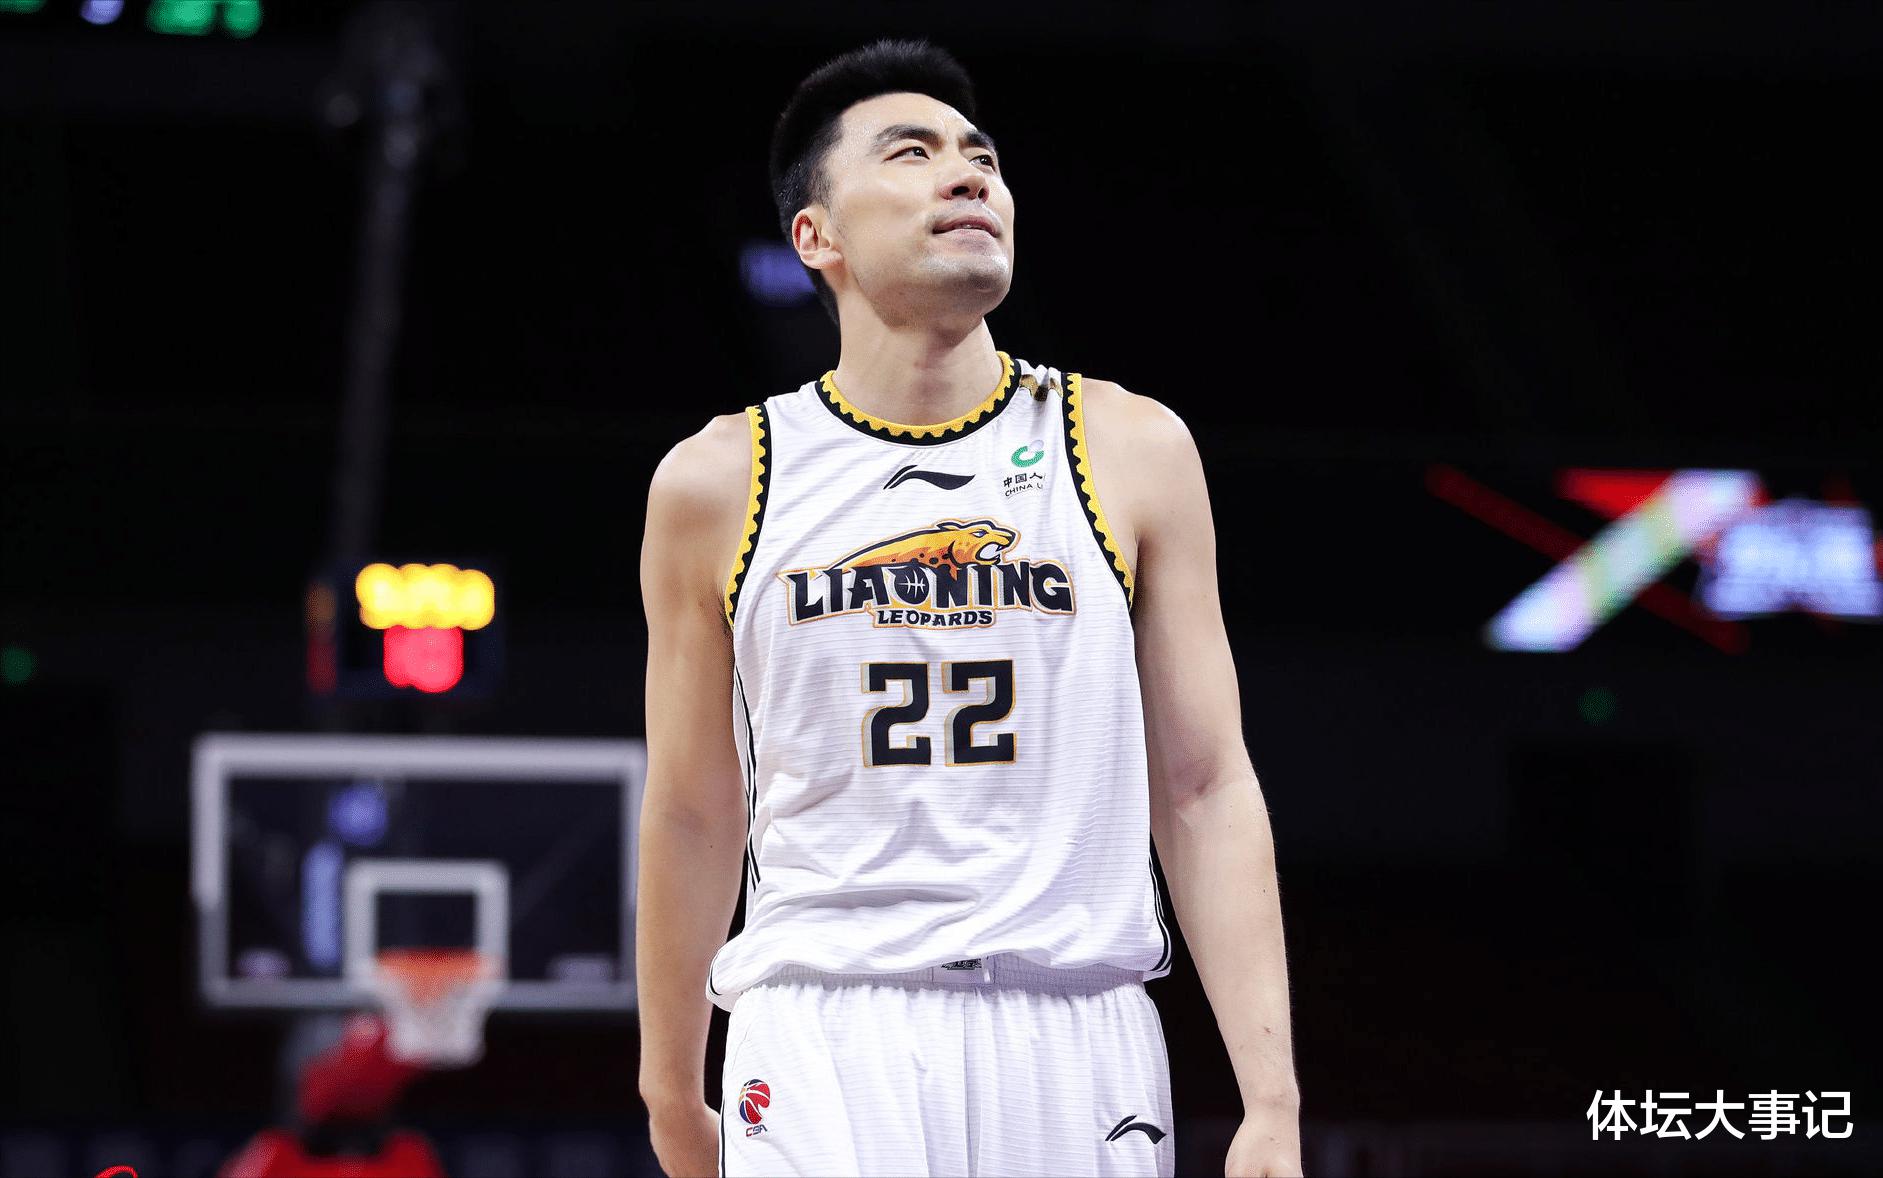 Trận chung kết ghi được 5 điểm trong bốn trận đấu, các cựu chiến binh bóng rổ Liao đã không nghỉ hưu, Yang Ming tin tưởng anh ấy và người kế nhiệm sau 00 quá dịu dàng (1)